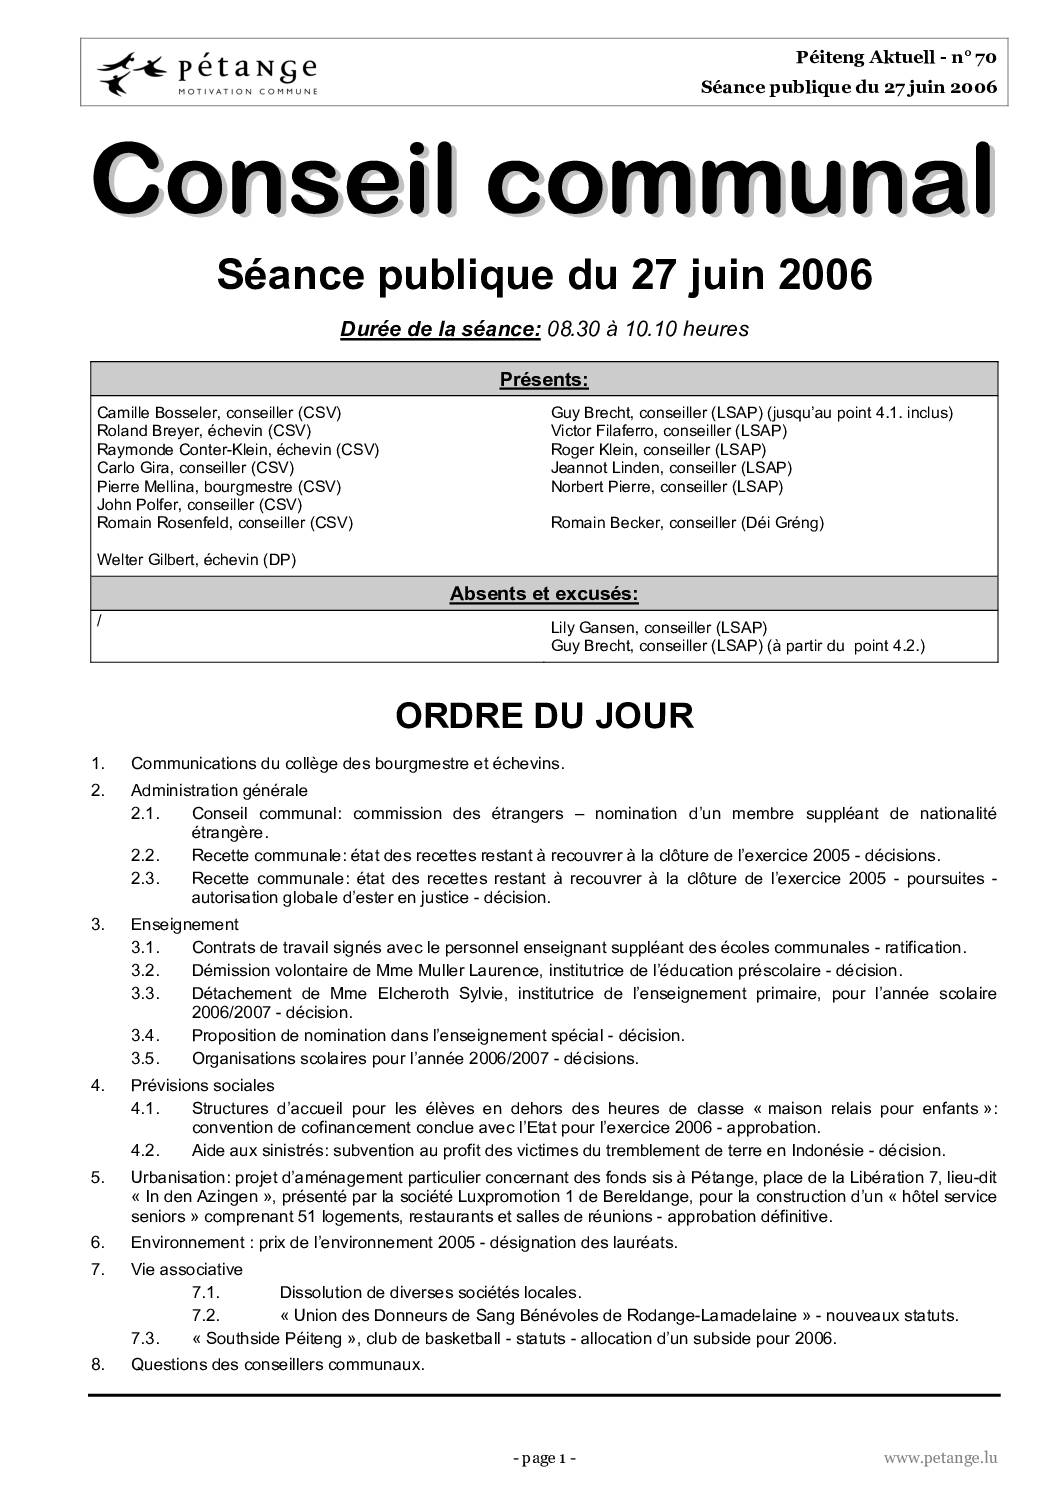 Rapport des séances du conseil communal du 27.06.2006, 17.07.2006 et 28.07.2006